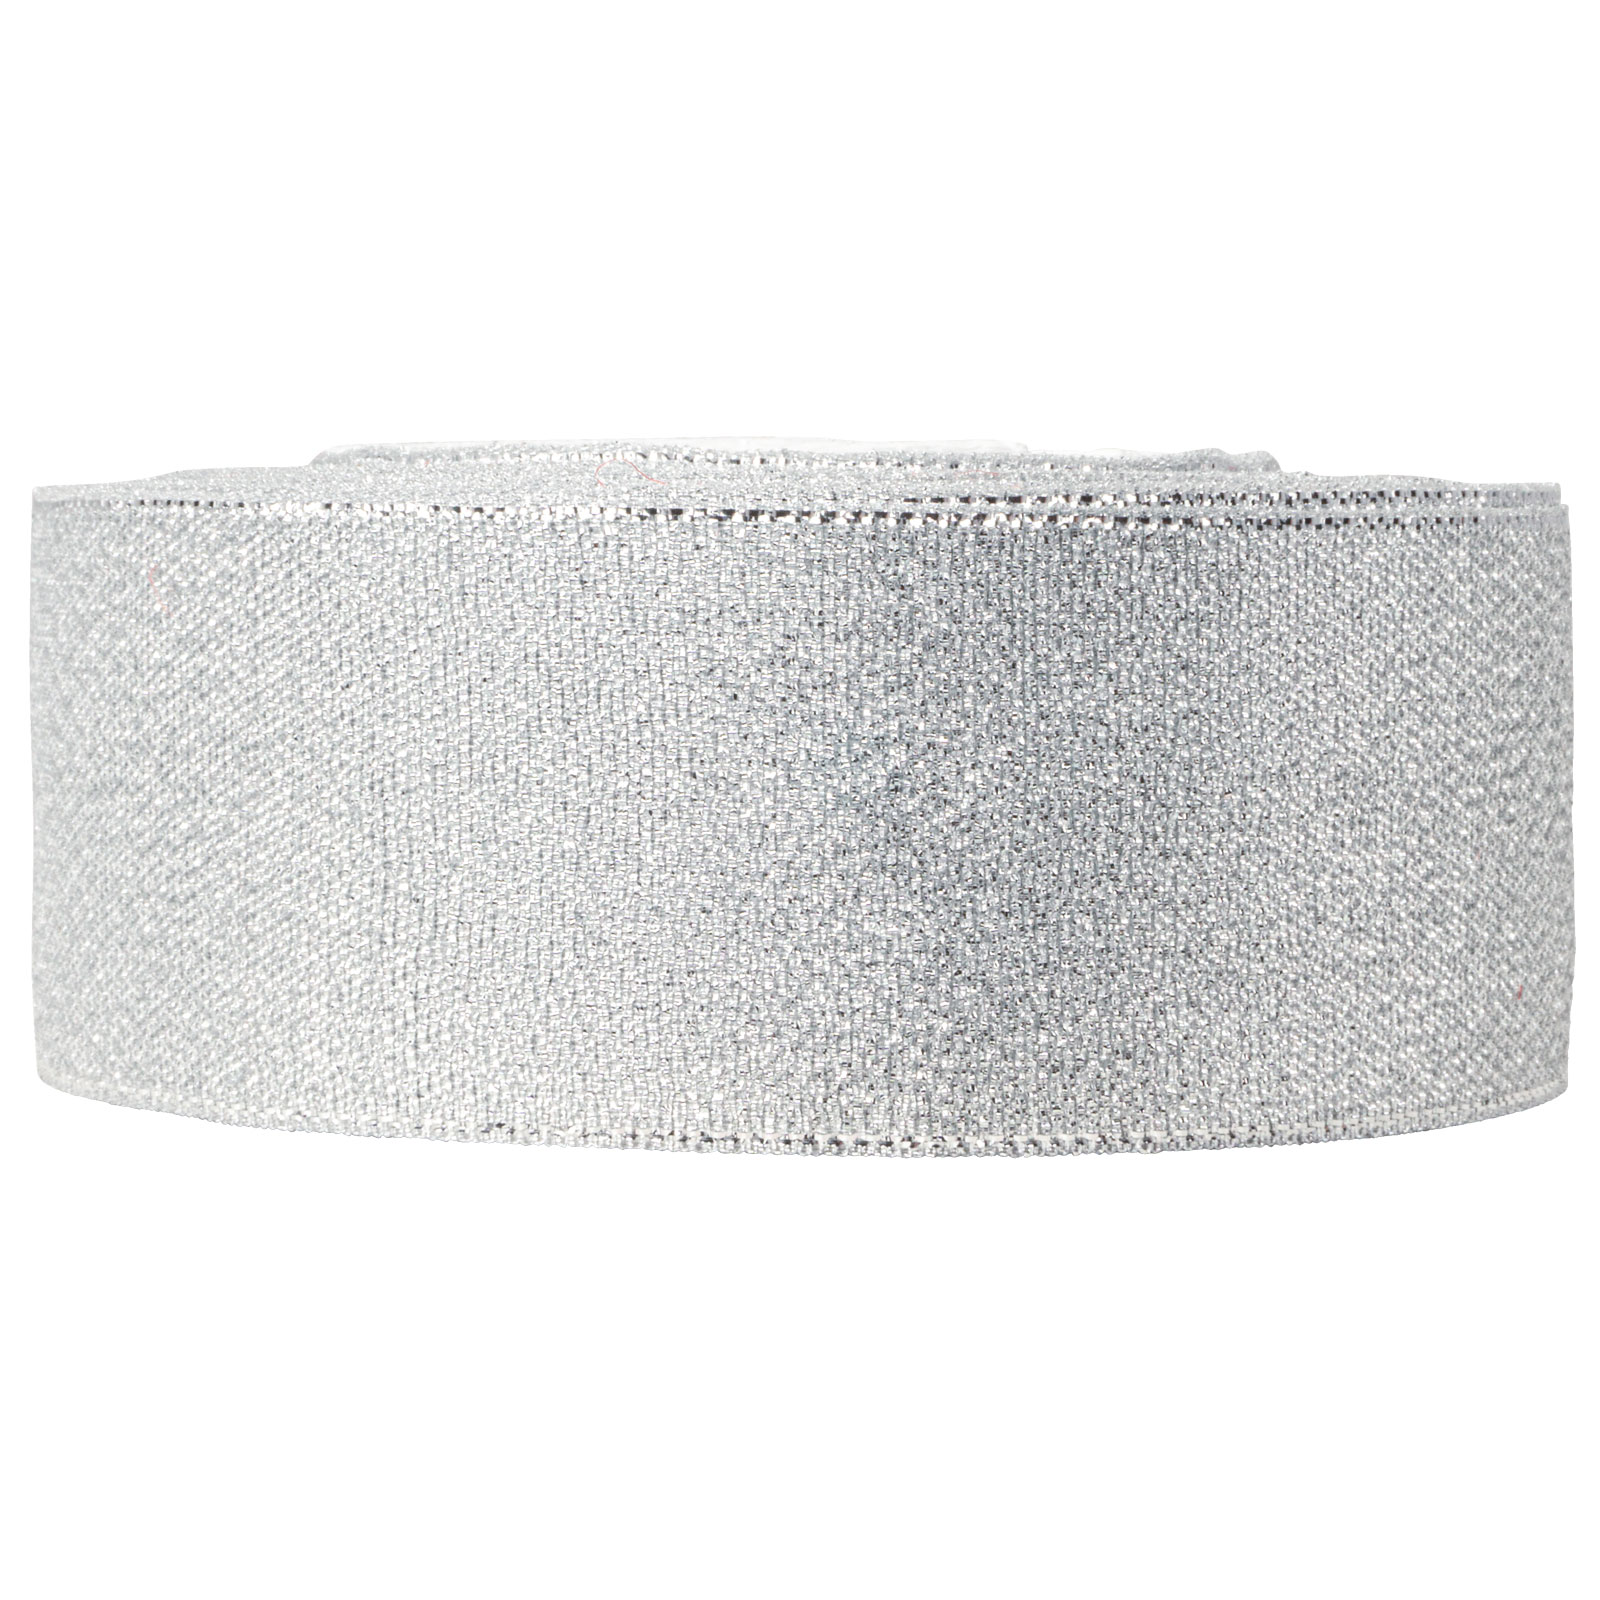 Geschenkband Silber Lurex 40mm Glänzendes Metallicband 22lfm